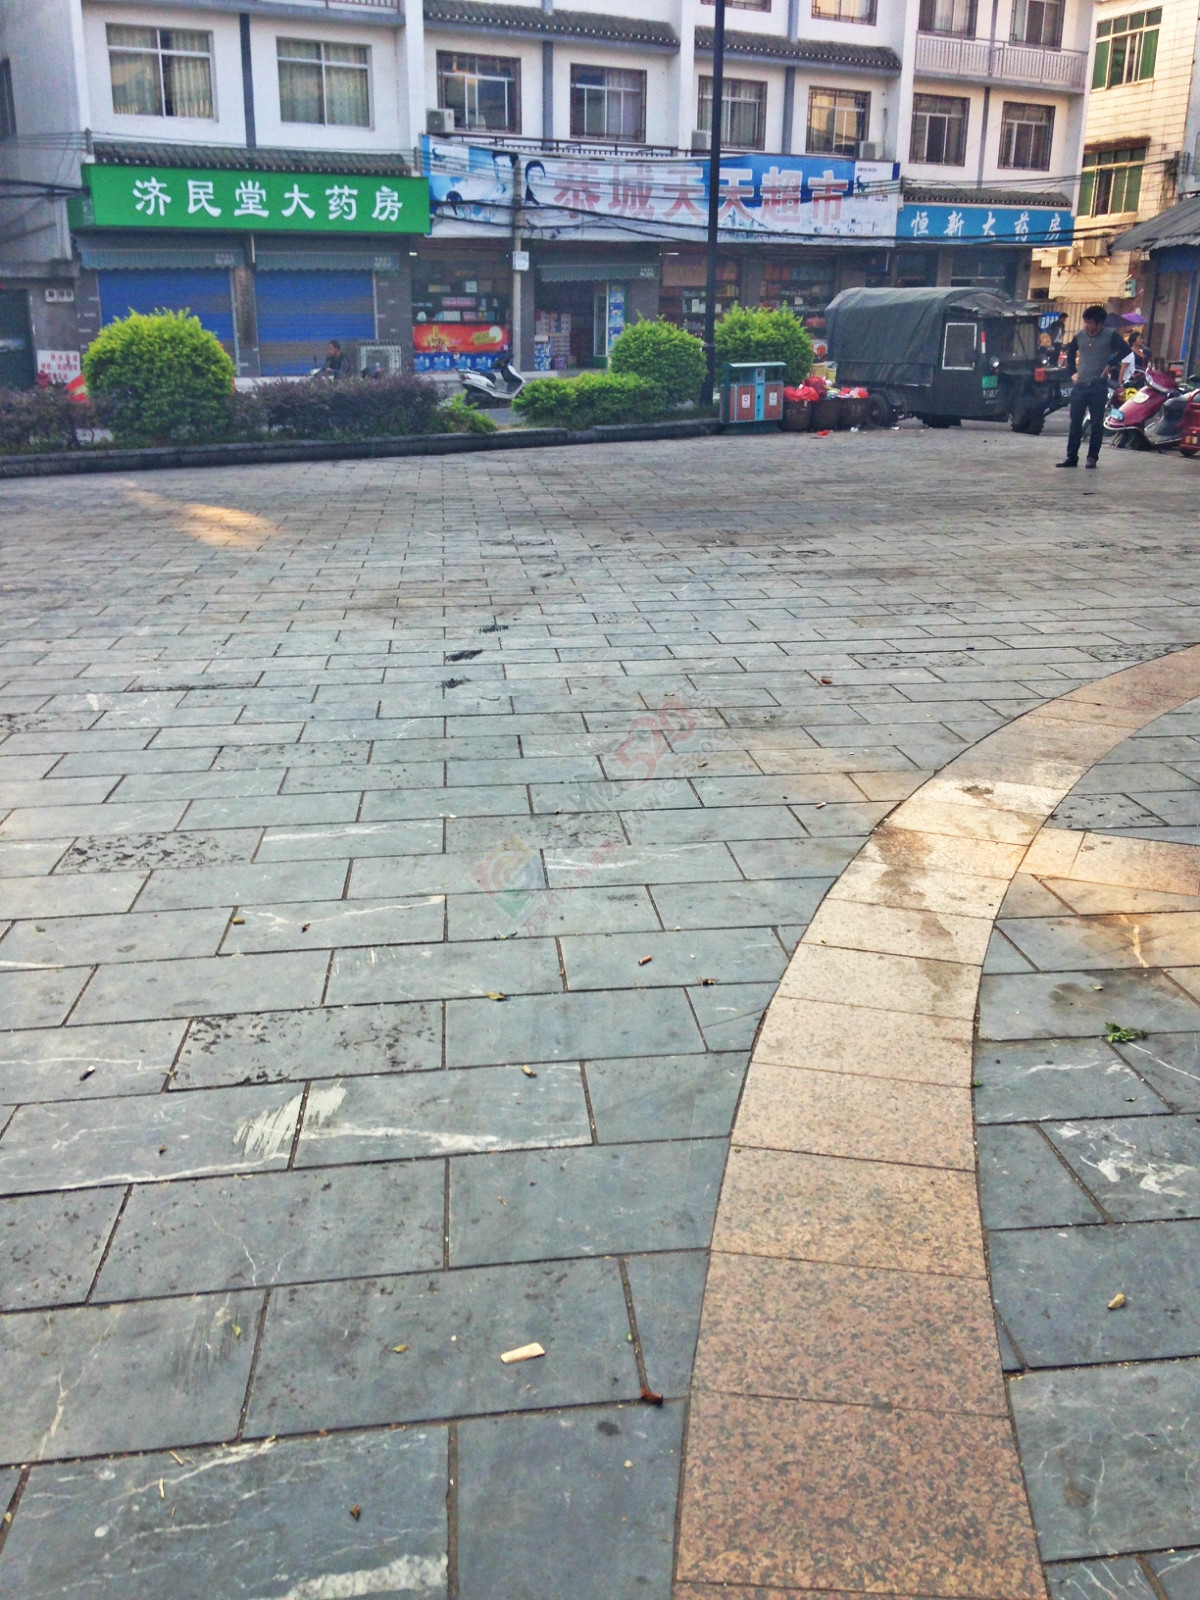 昔日的小广场如今已成了“垃圾堆”57 / 作者:恭城520小奈姐姐 / 帖子ID:128568